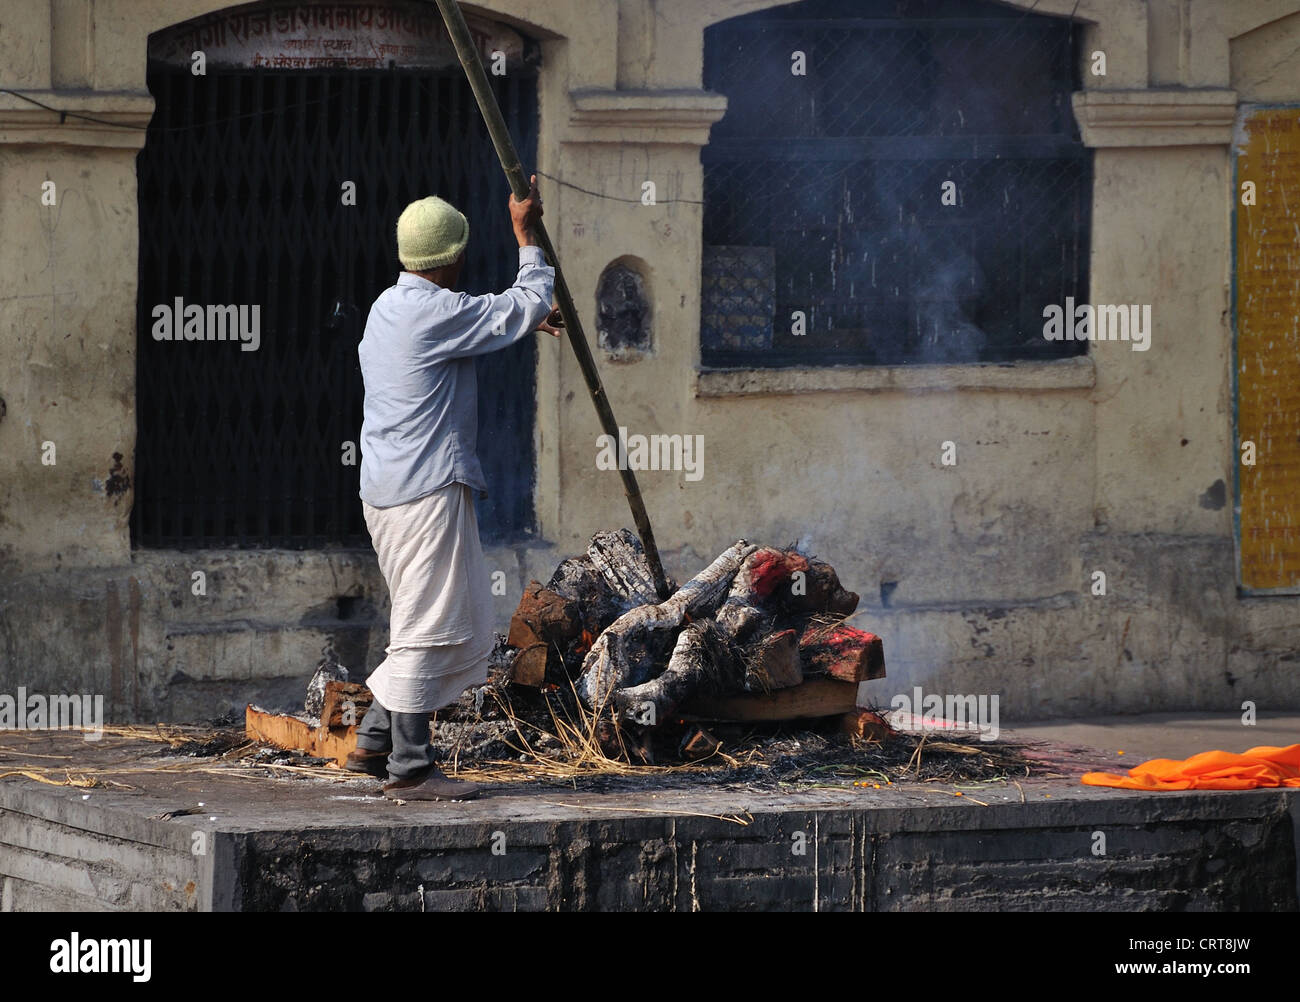 Cremation taking place at Pashupatinath, Kathmandu, Nepal Stock Photo